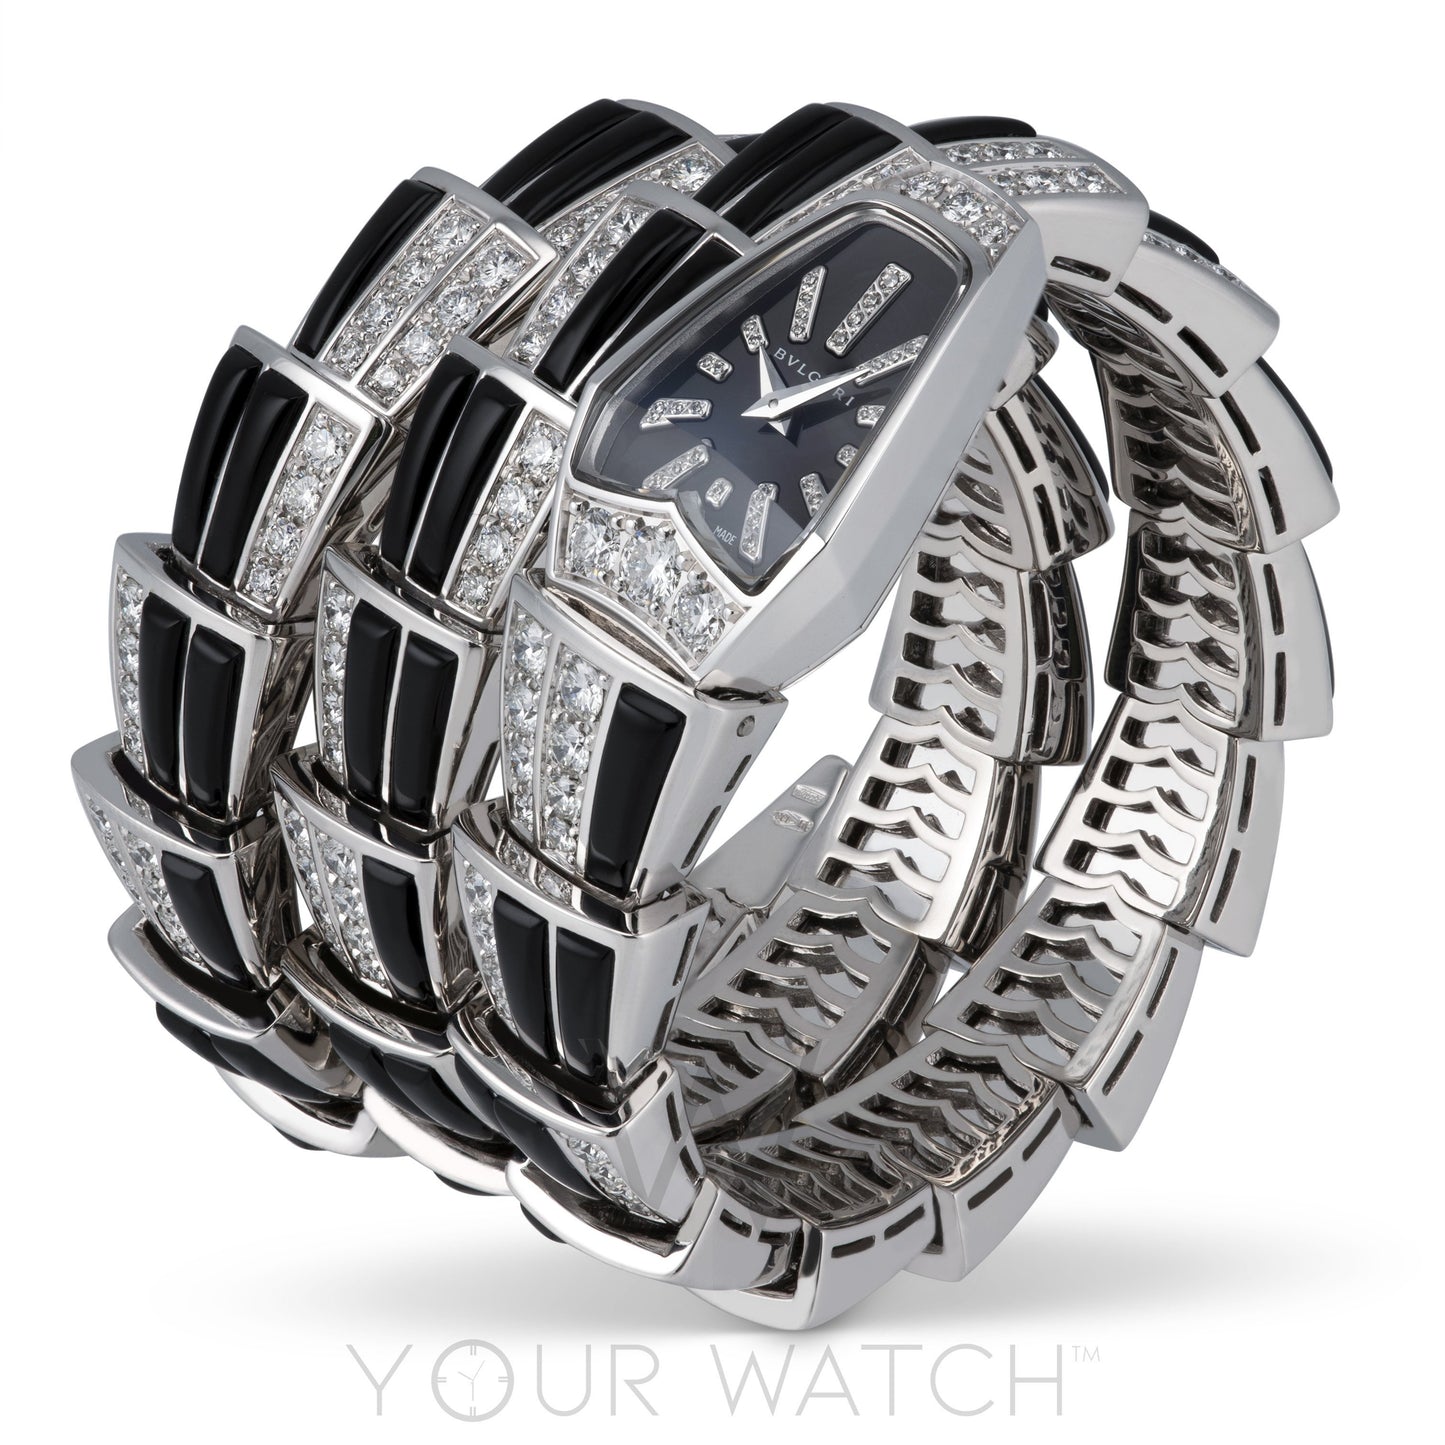 Bvlgari Serpenti Jewellery Sapphire Crystal Dial Ladies Watch 102112